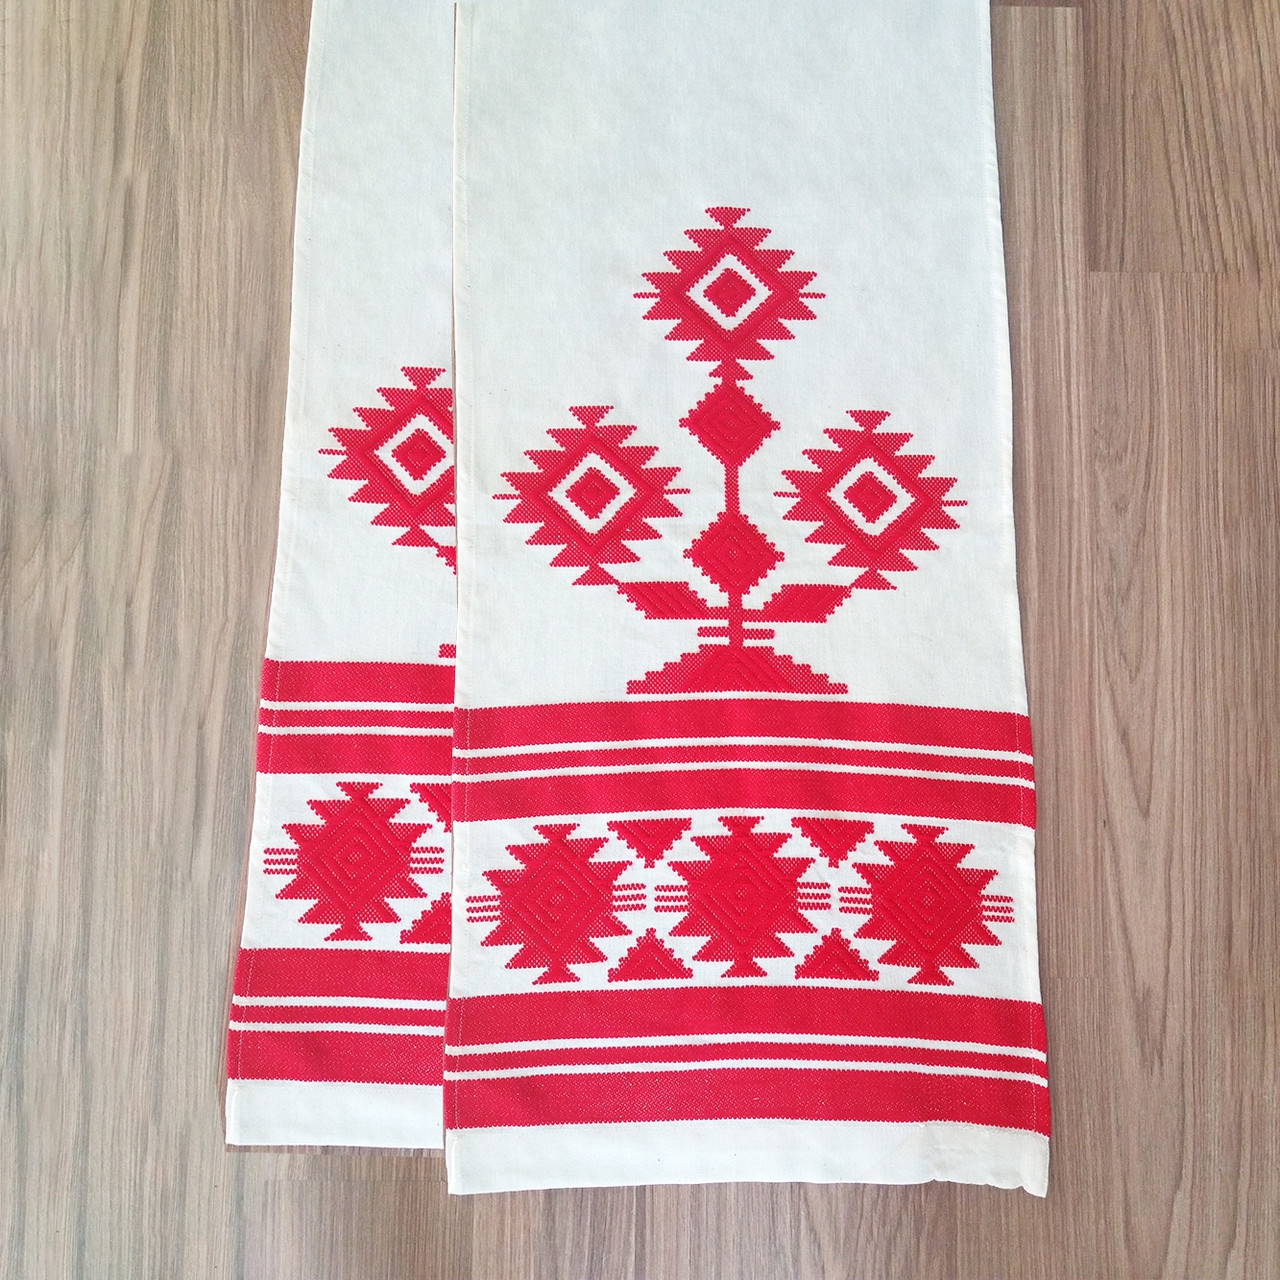 Русское полотенце с вышивкой